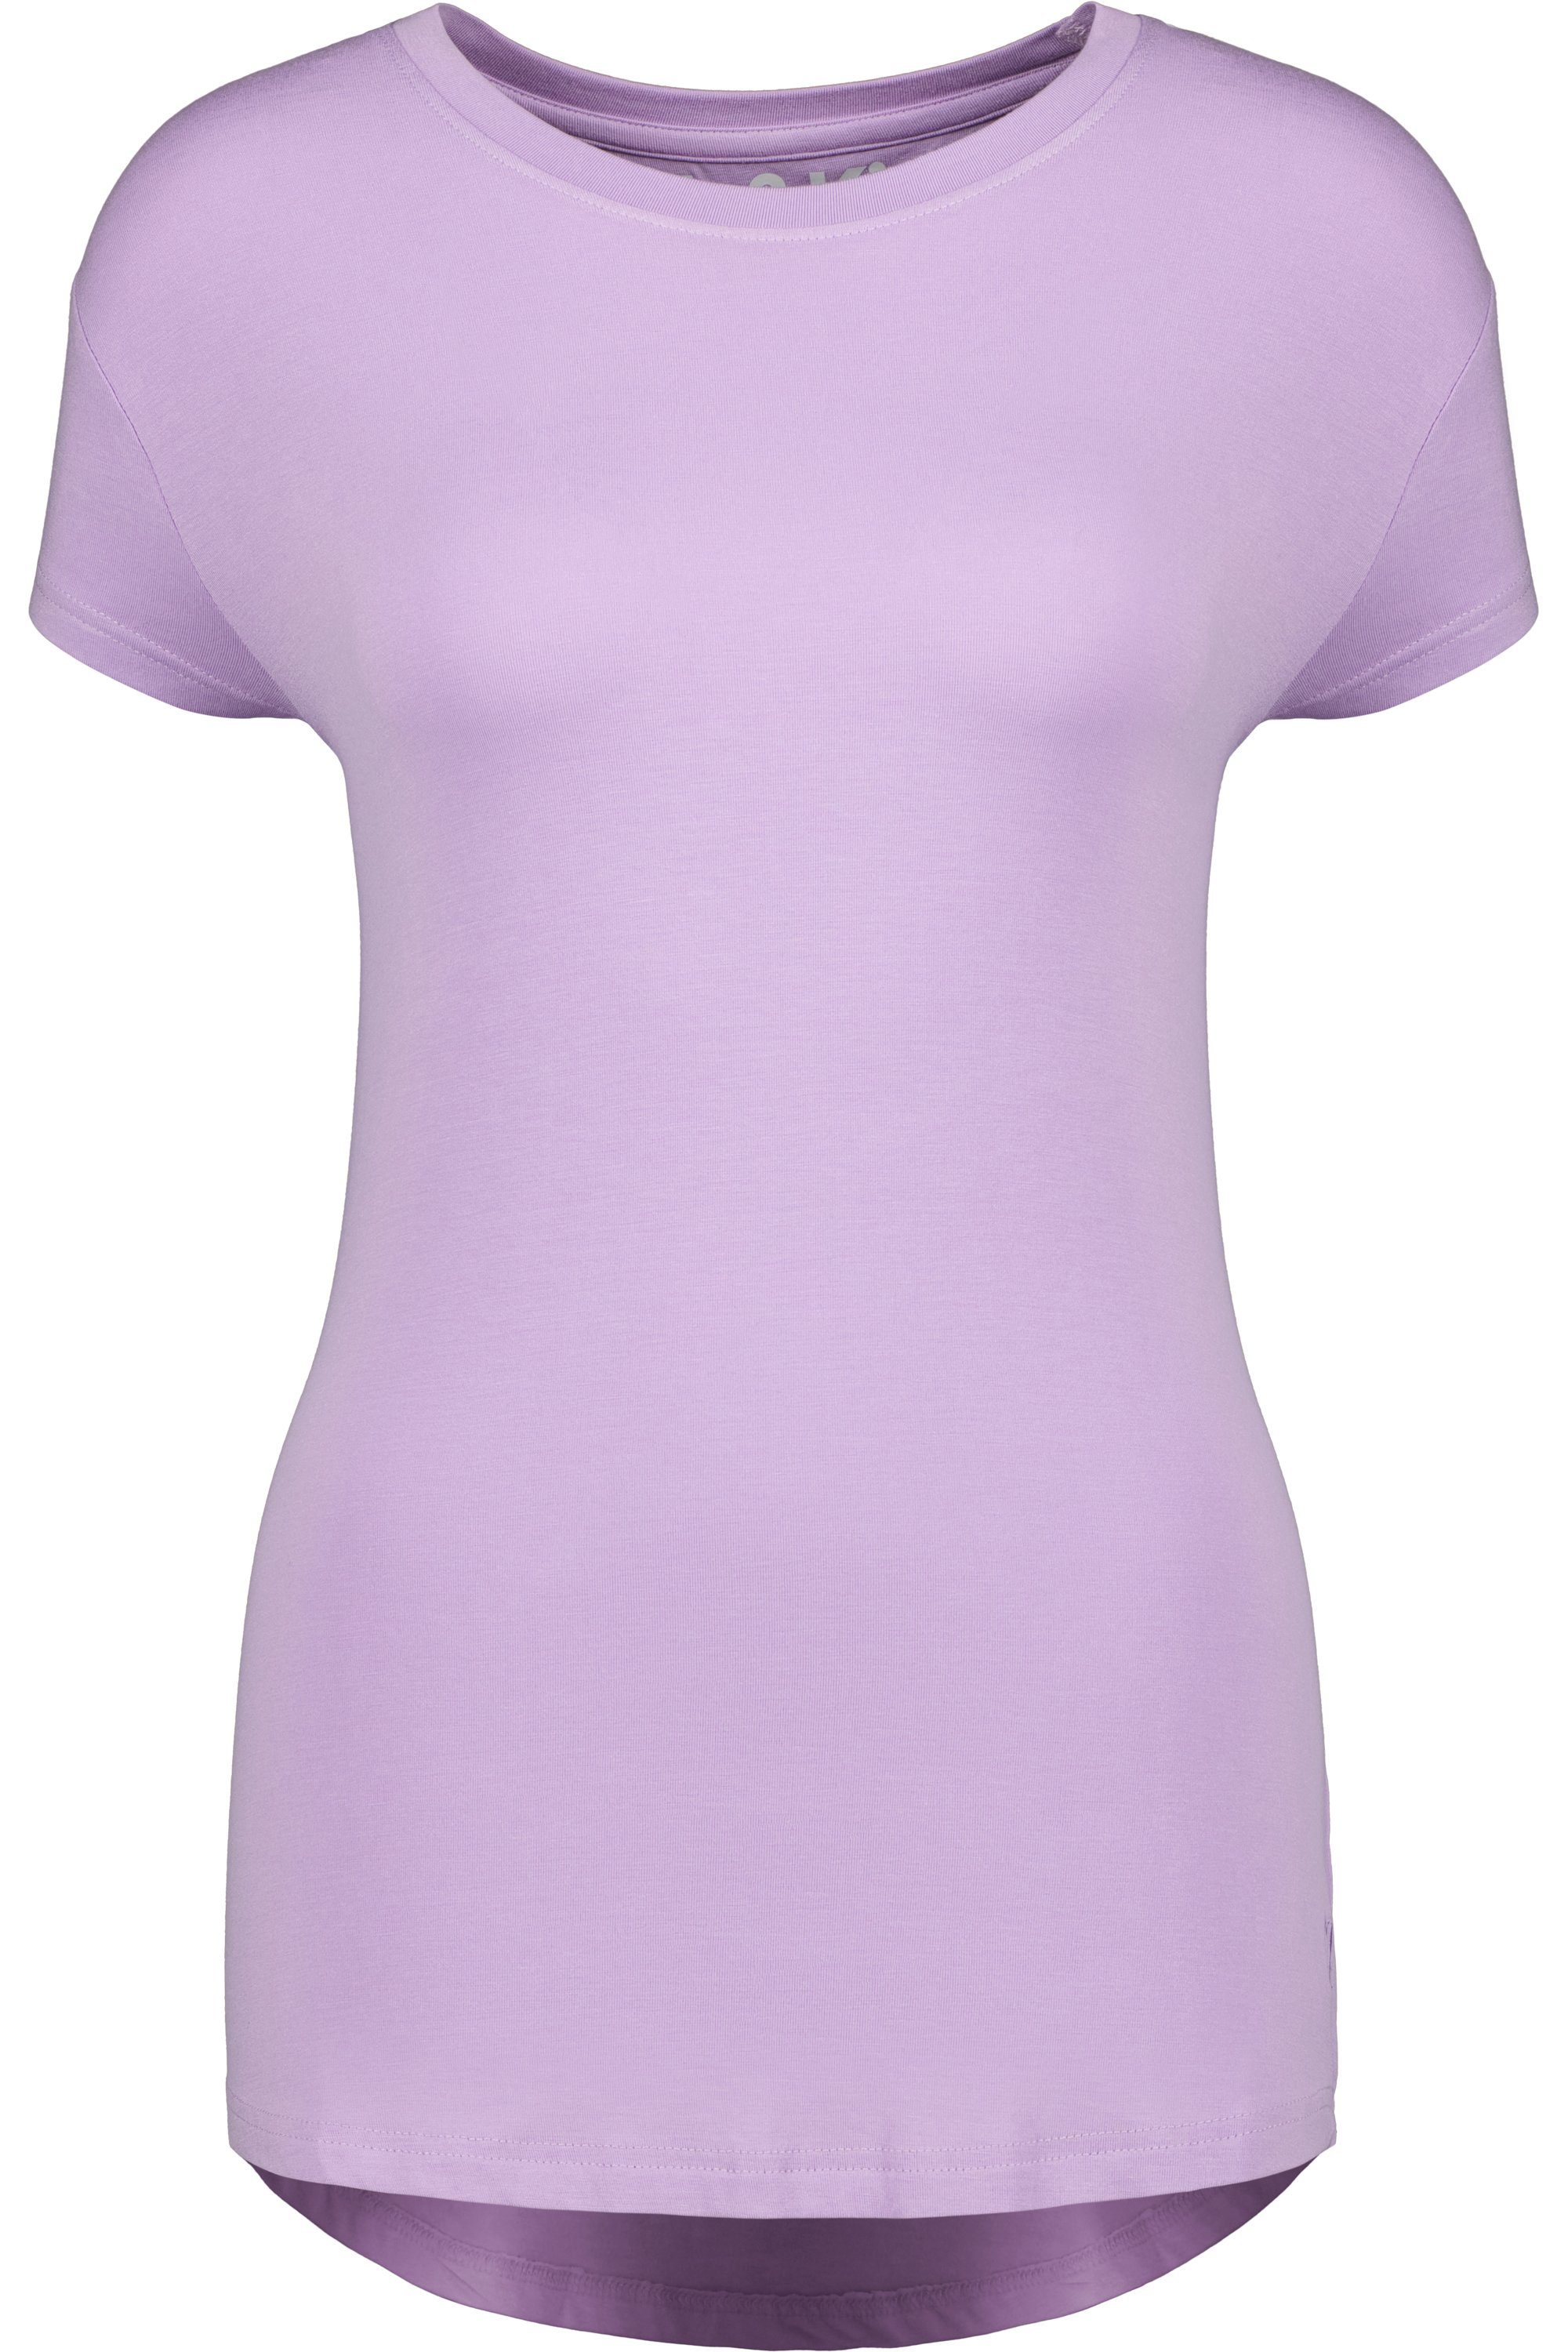 Rundhalsshirt & Shirt Kickin digital Alife Shirt MimmyAK Kurzarmshirt, lavender Damen A